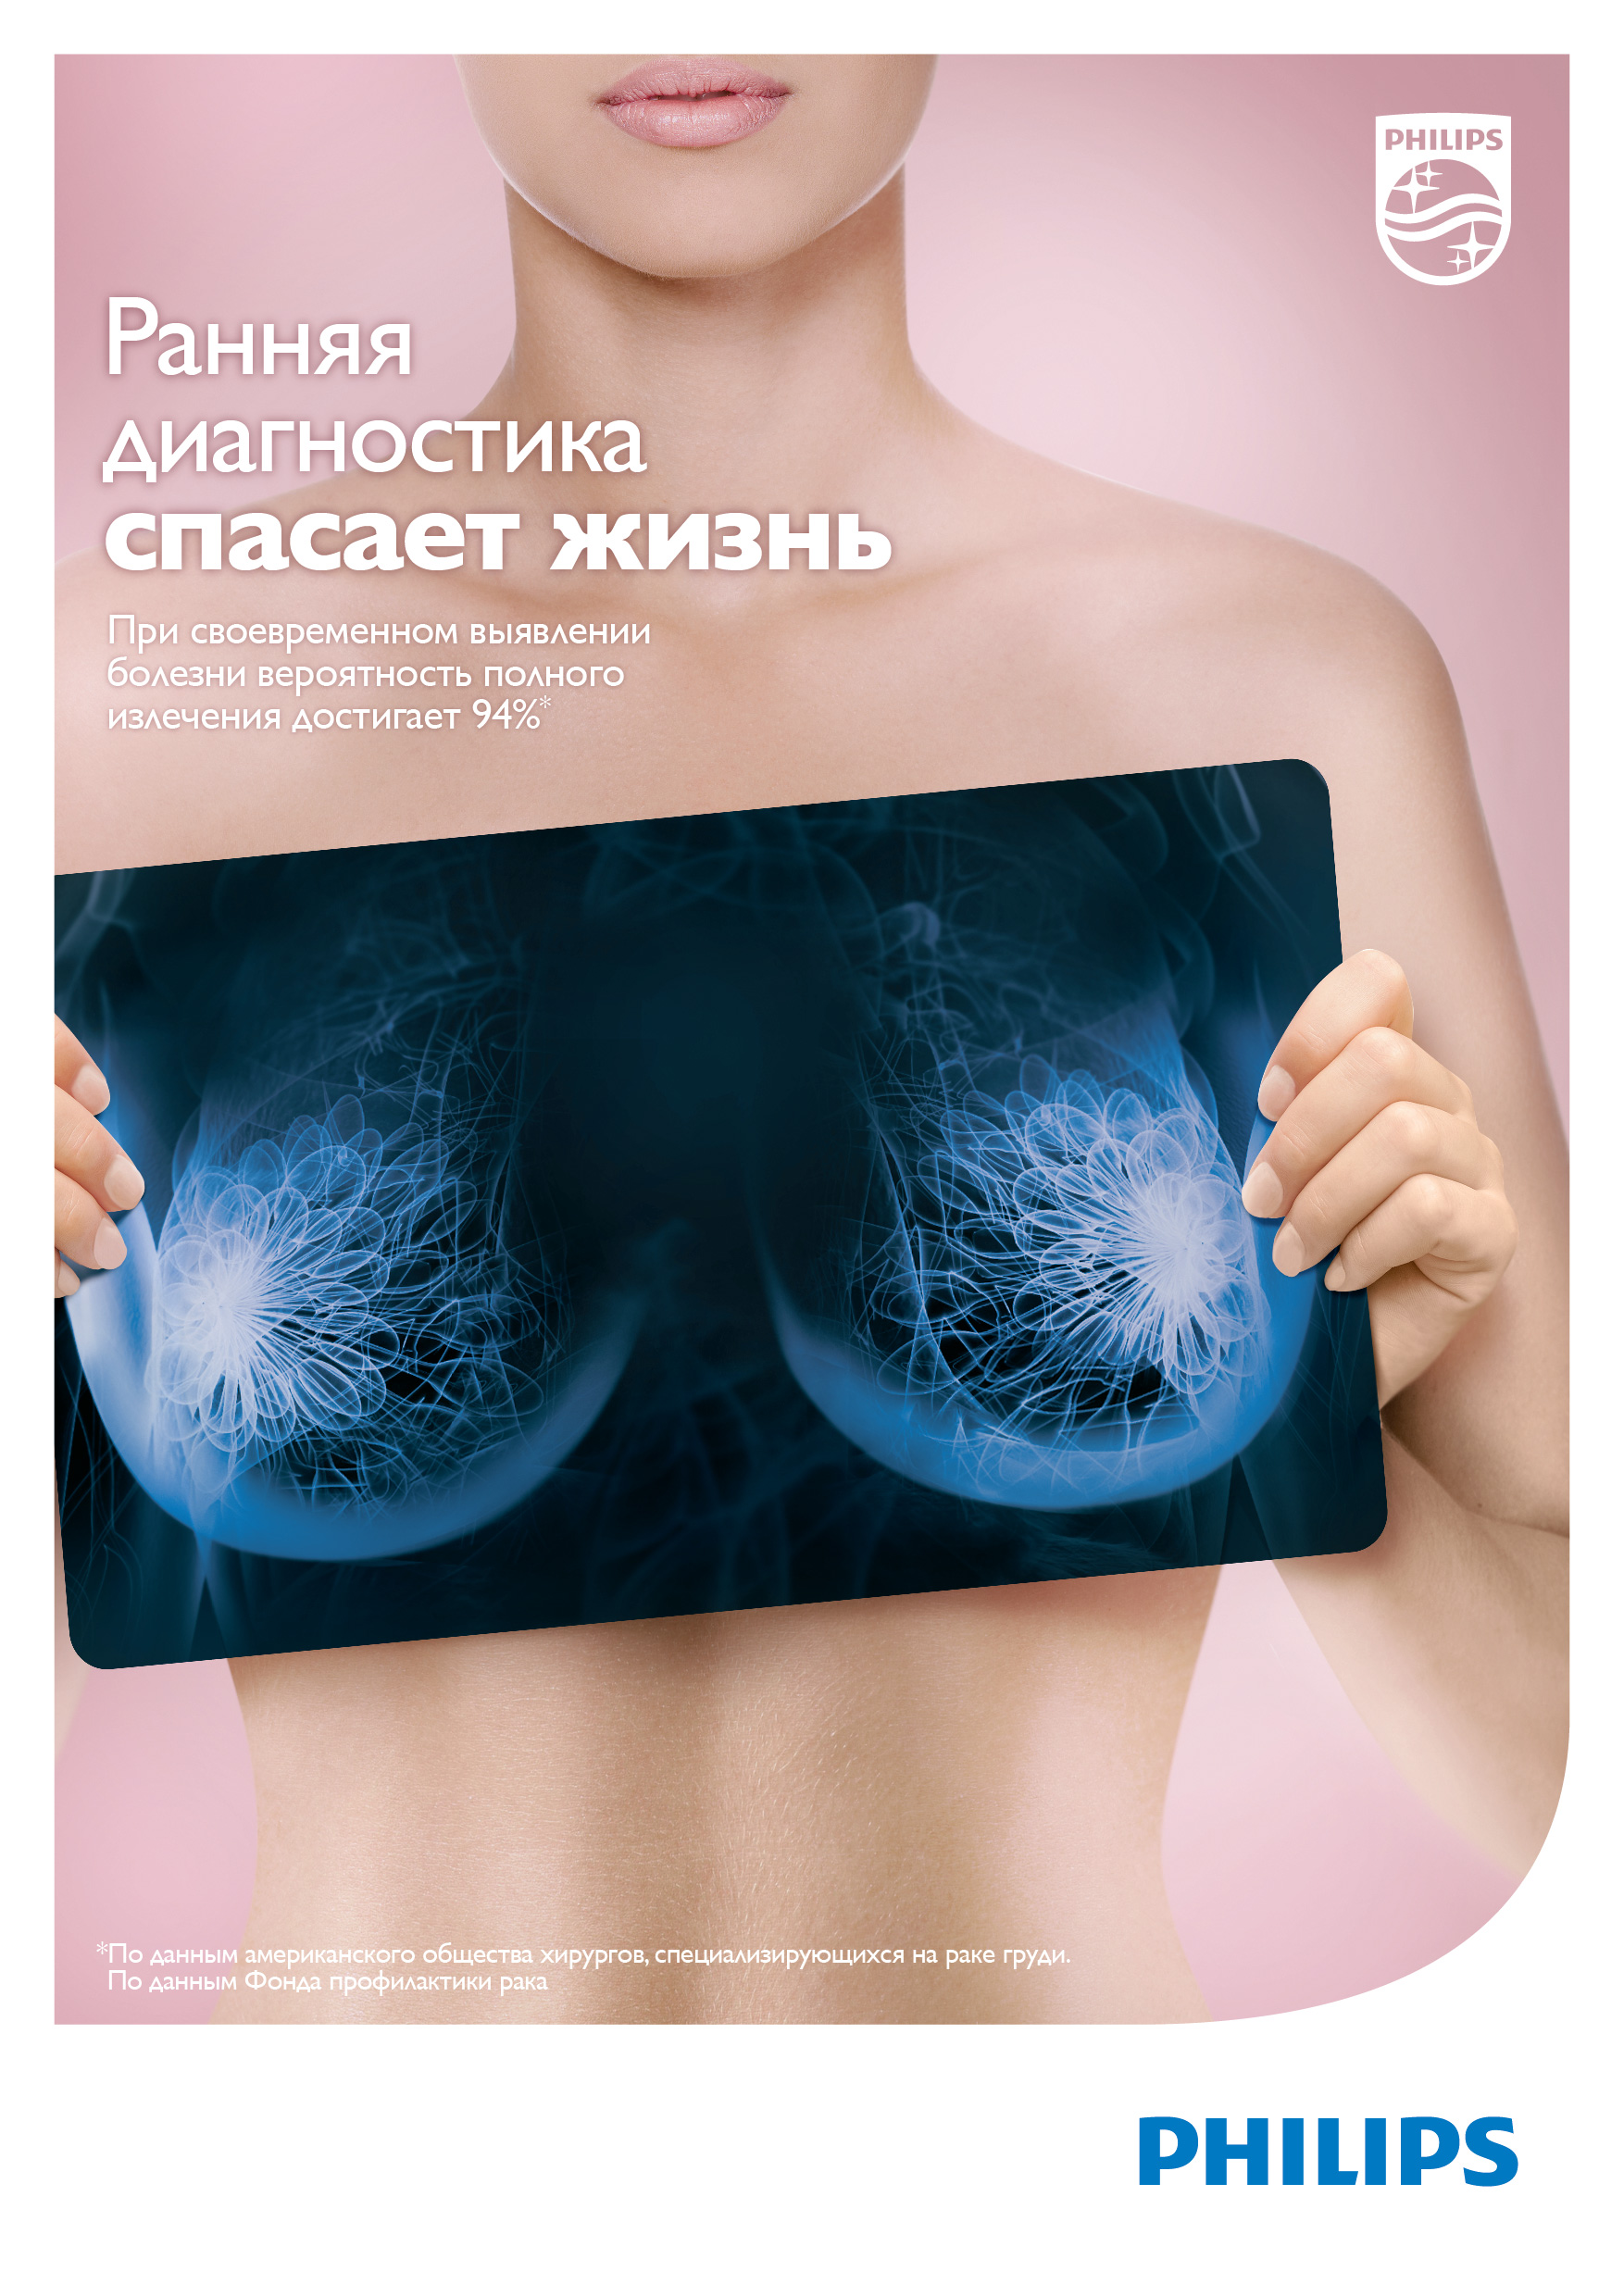 Philips выступил против рака груди | Пресс-релизы | Новости | AdIndex.ru